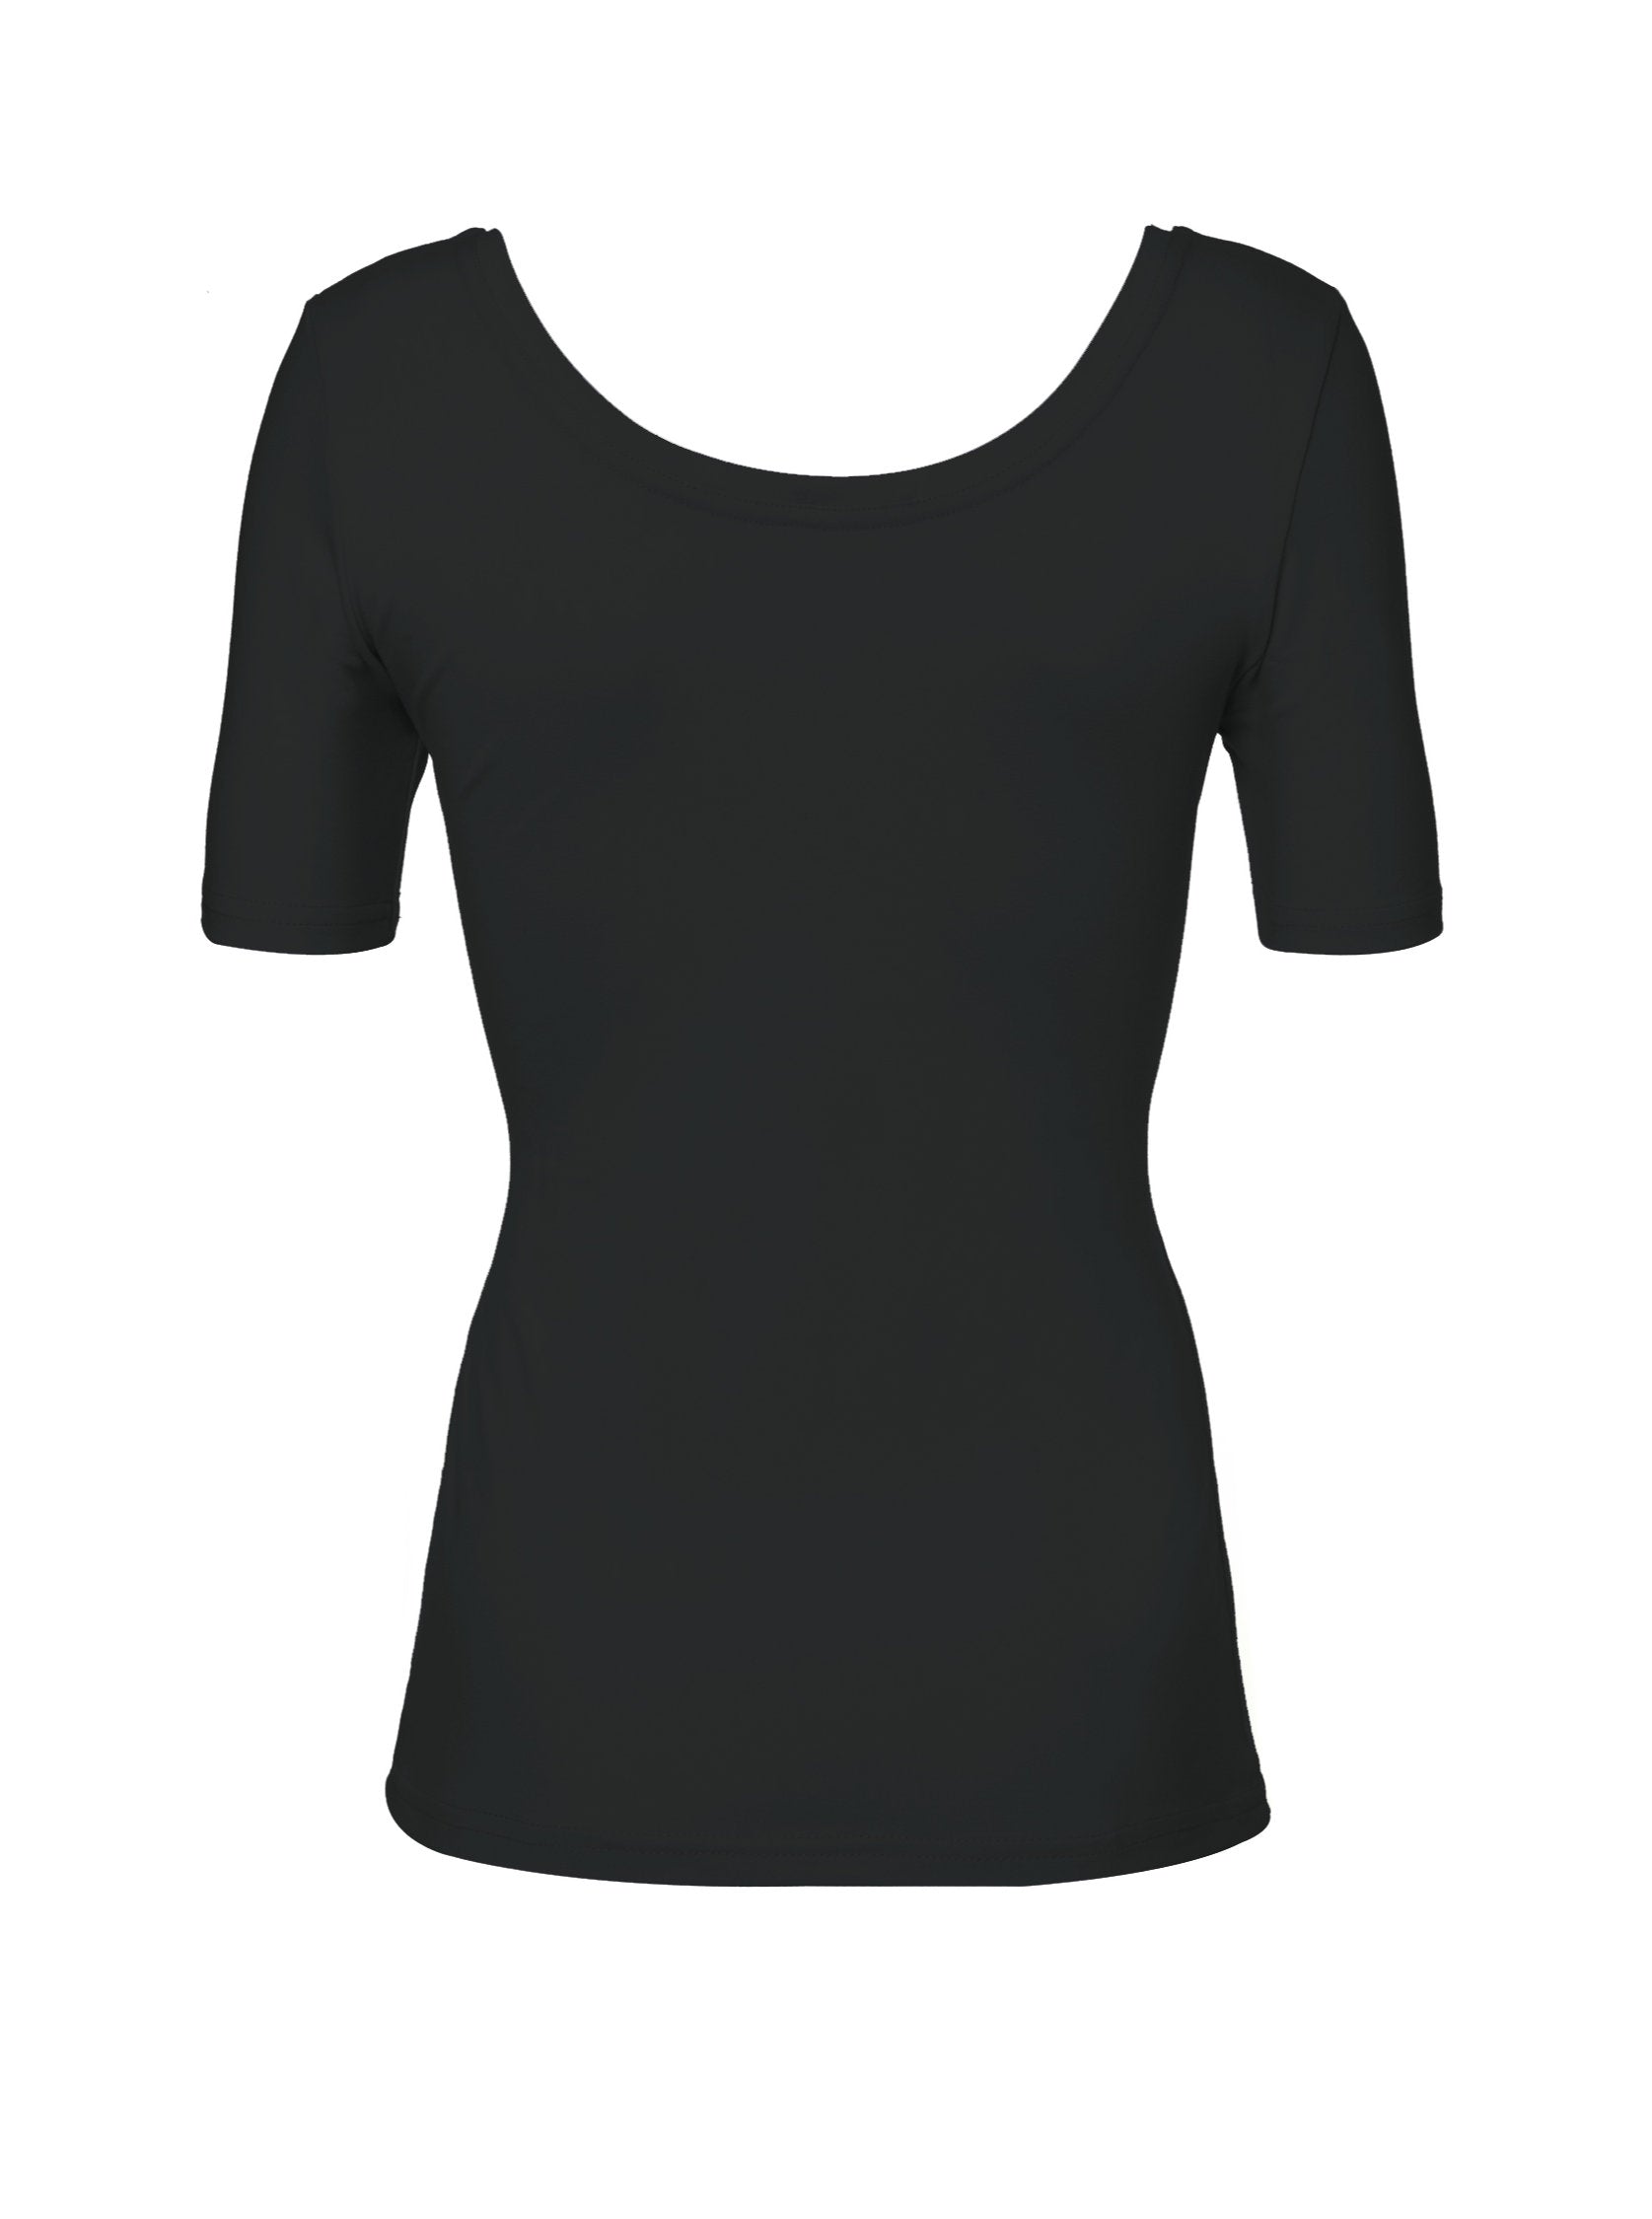 MN Ballet Short-sleeve T-shirt